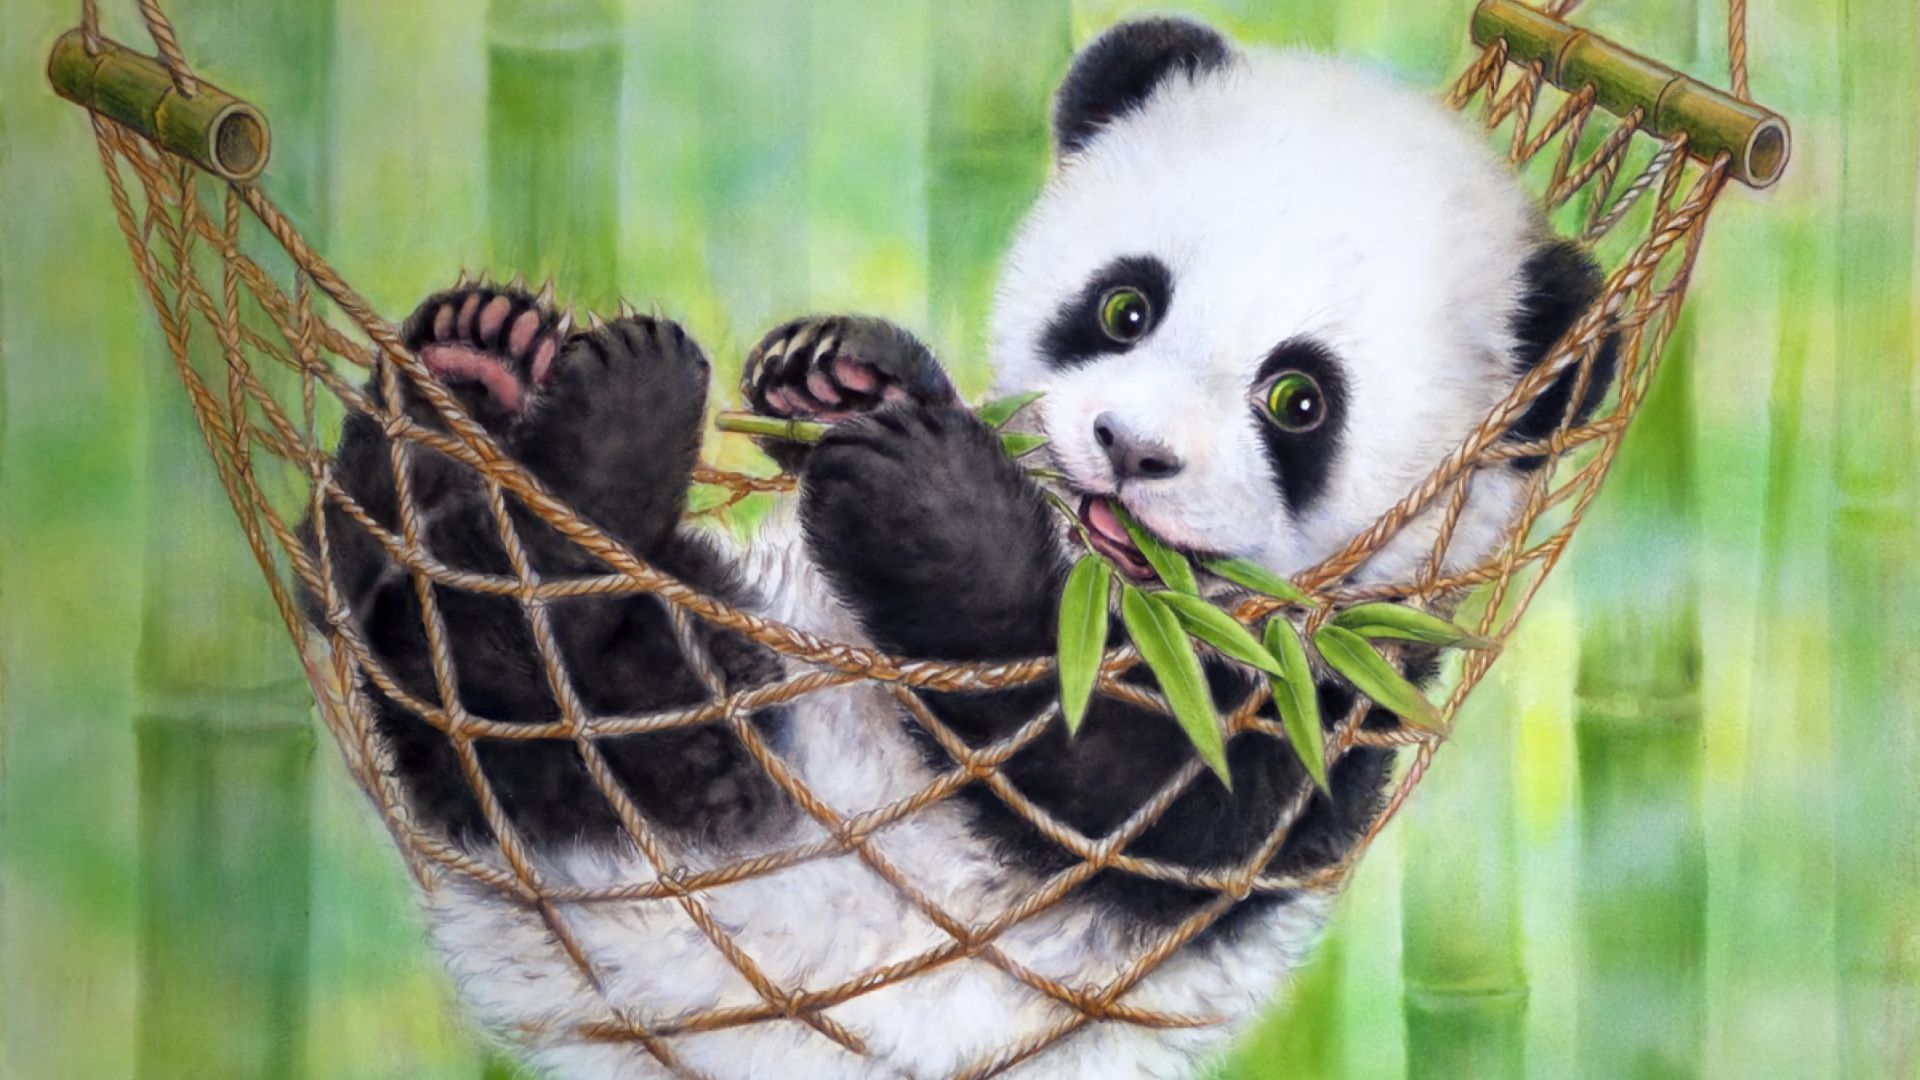 panda, baby animal, animal, hammock